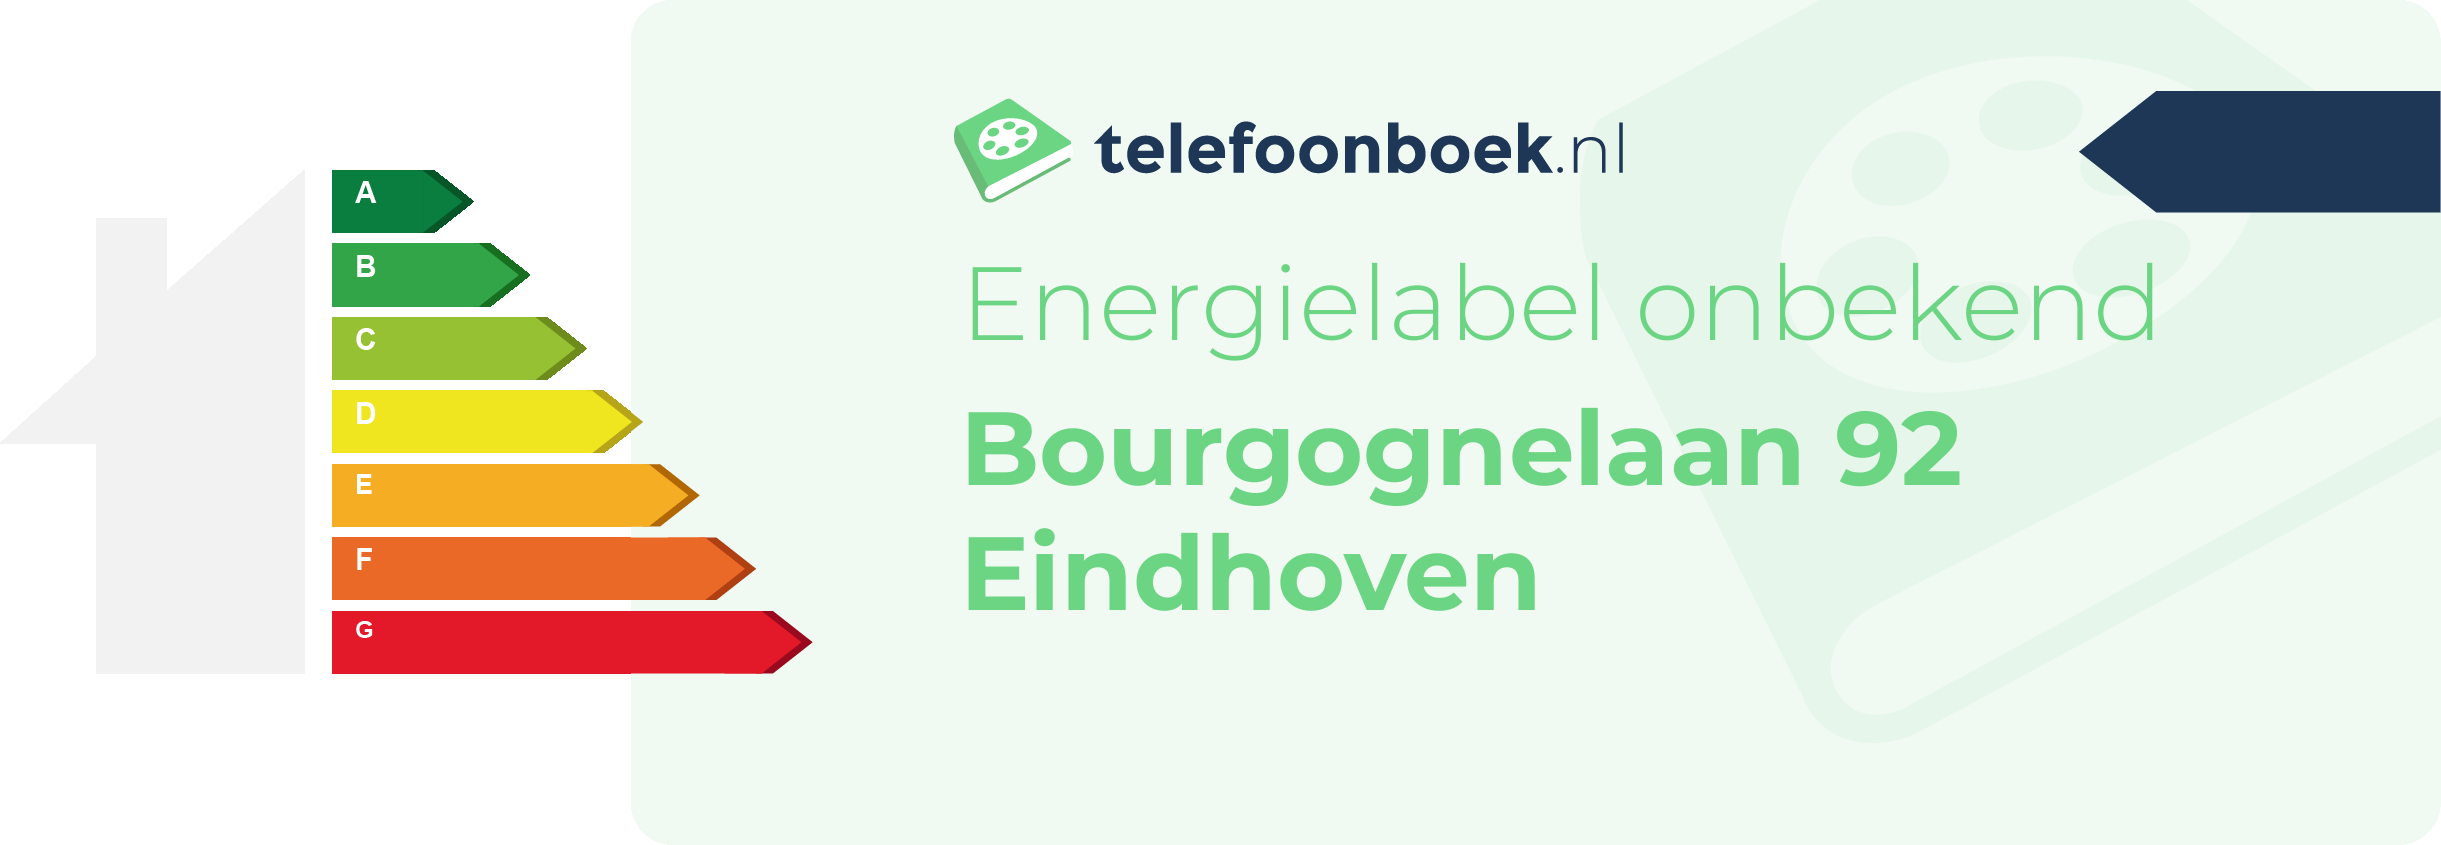 Energielabel Bourgognelaan 92 Eindhoven